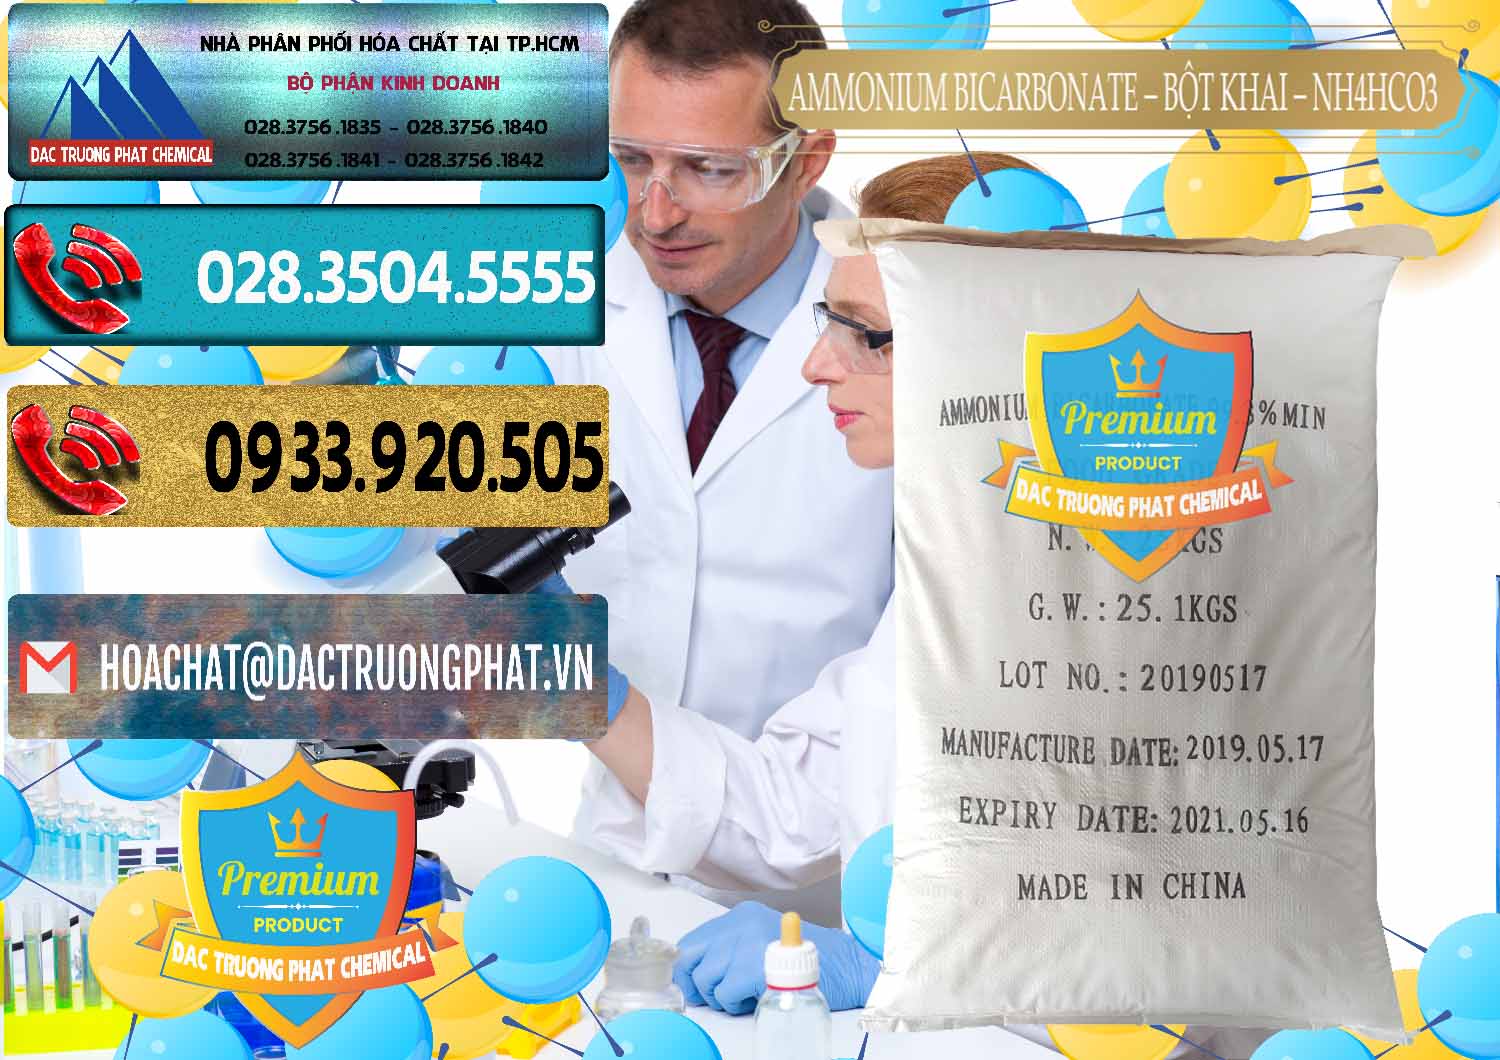 Đơn vị cung ứng và bán Ammonium Bicarbonate - Bột Khai Food Grade Trung Quốc China - 0018 - Đơn vị kinh doanh & phân phối hóa chất tại TP.HCM - hoachatdetnhuom.com